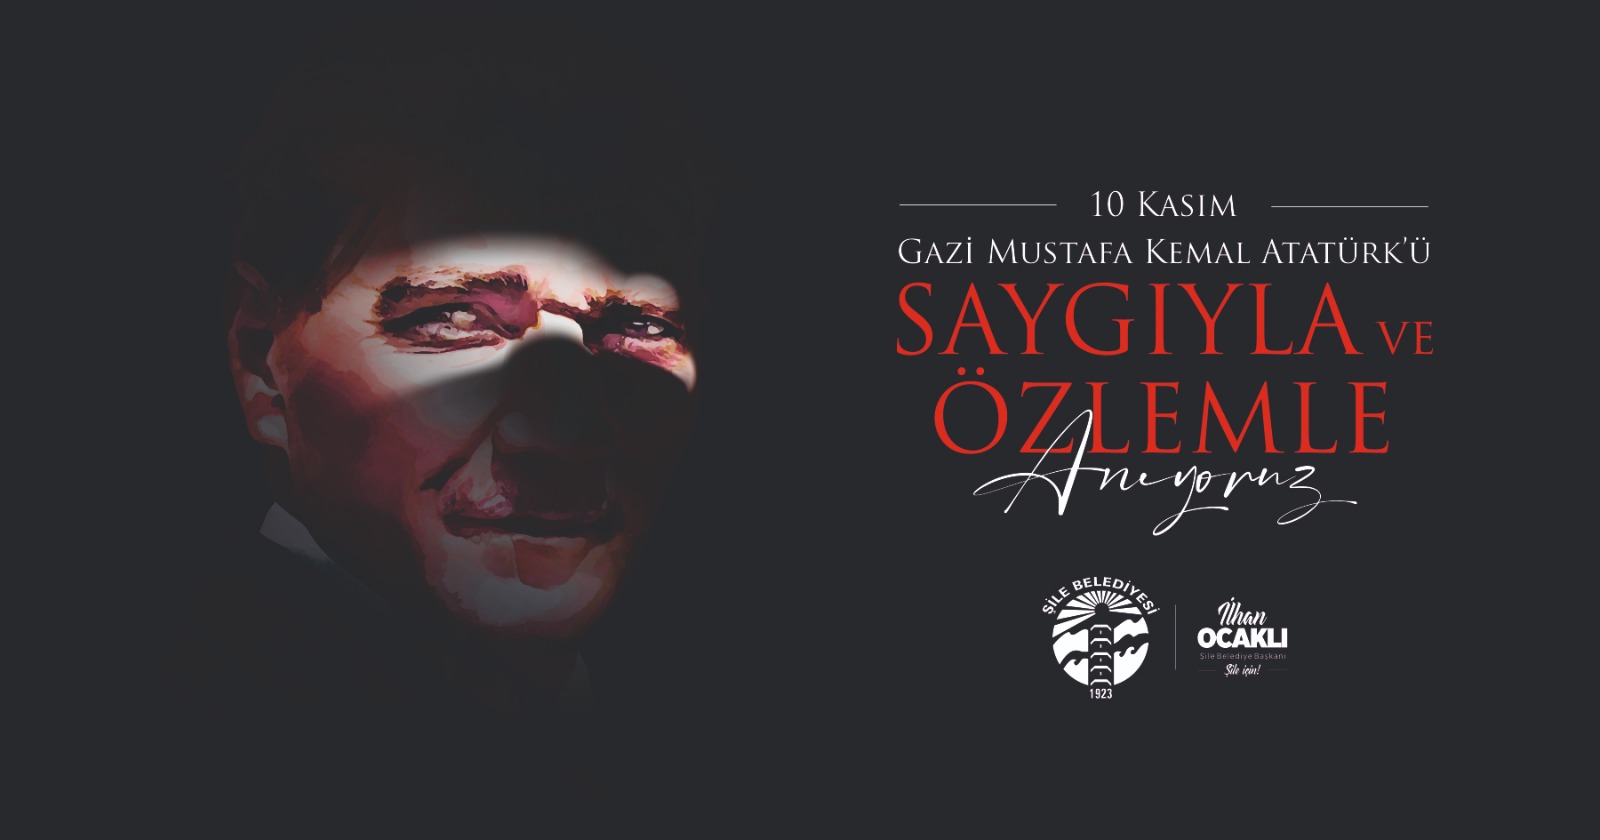 10 Kasım Gazi Mustafa Kemal Atatürk'ü Saygı ve Özlemle Anıyoruz